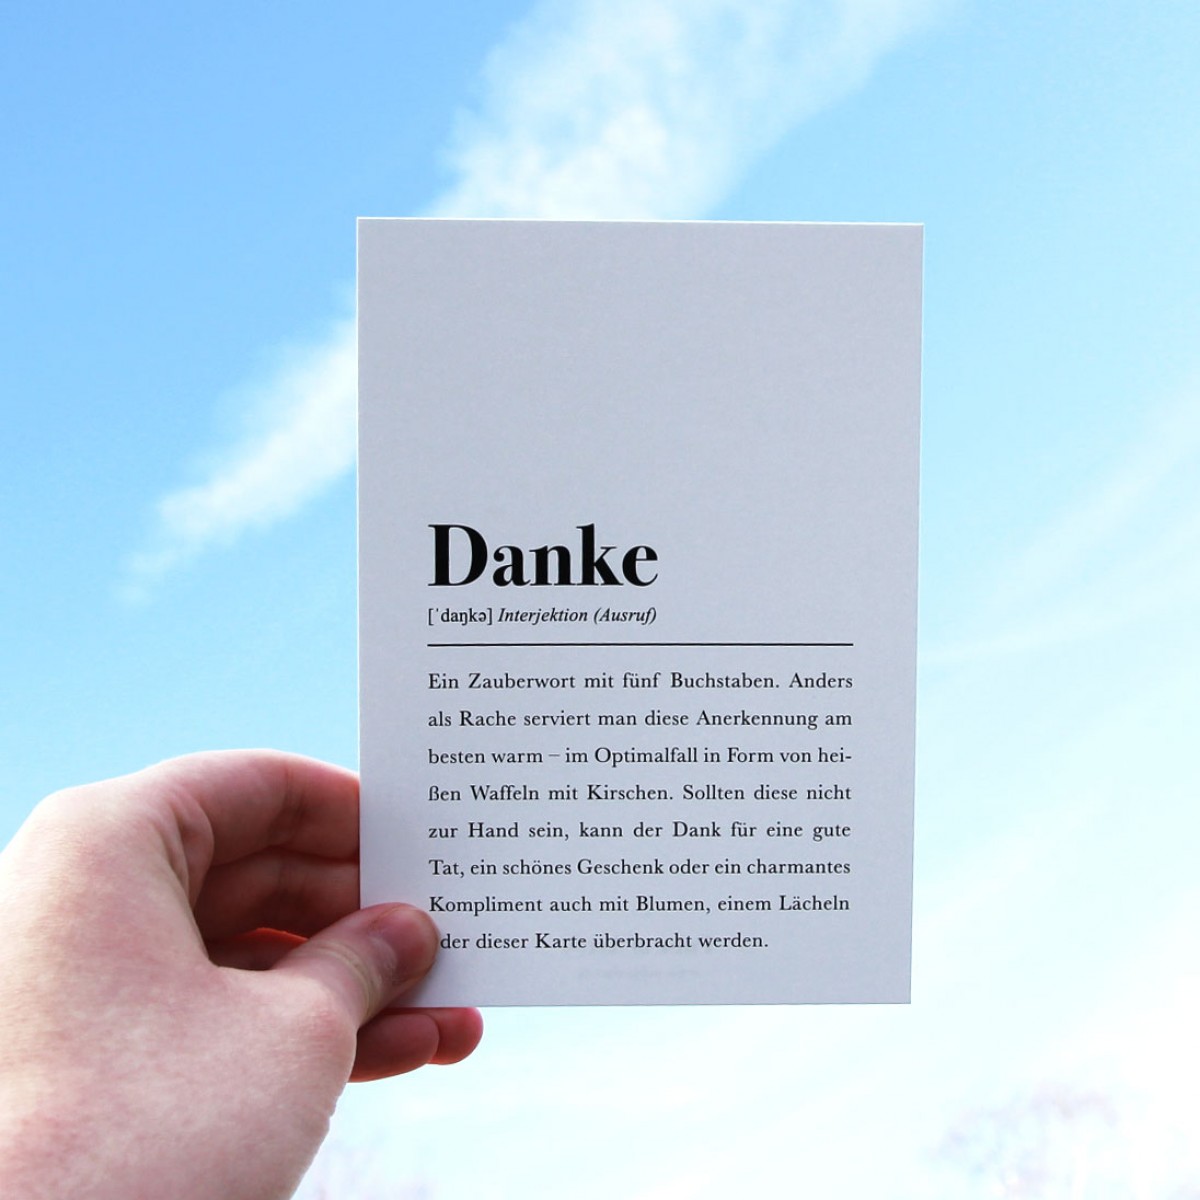 3x Dankeskarte mit Umschlag: "Danke" Definition